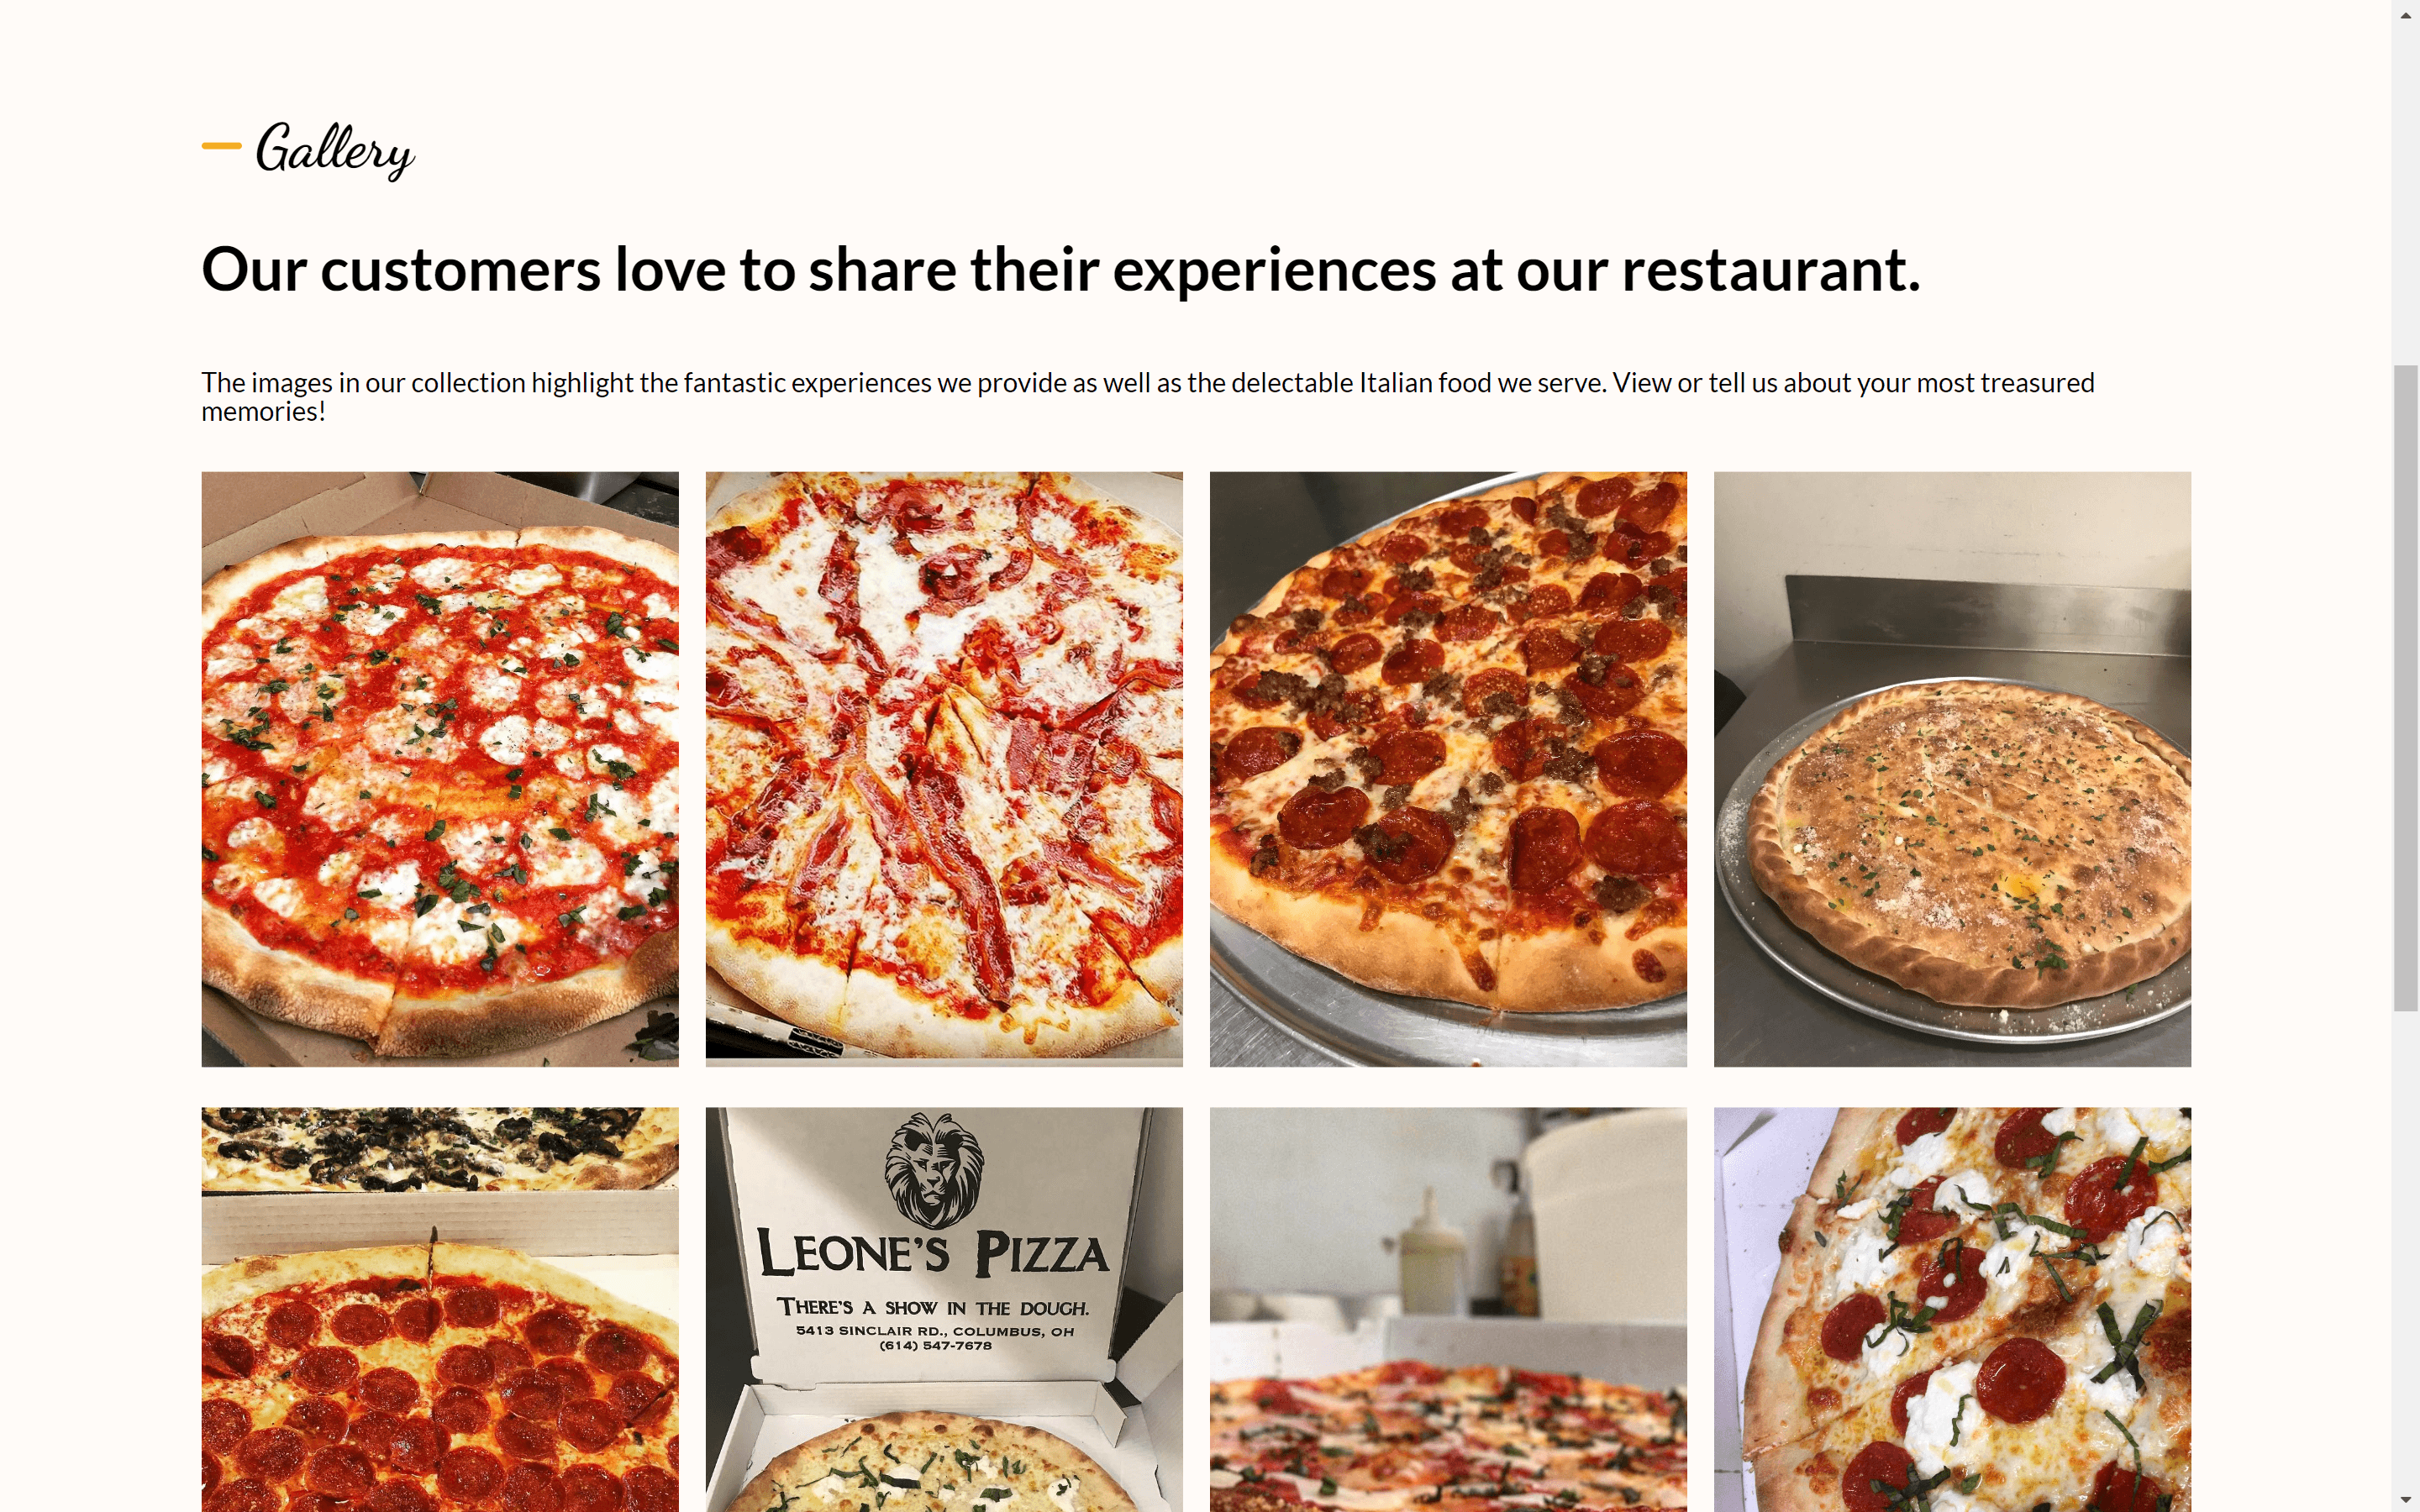 Leones Pizzeria